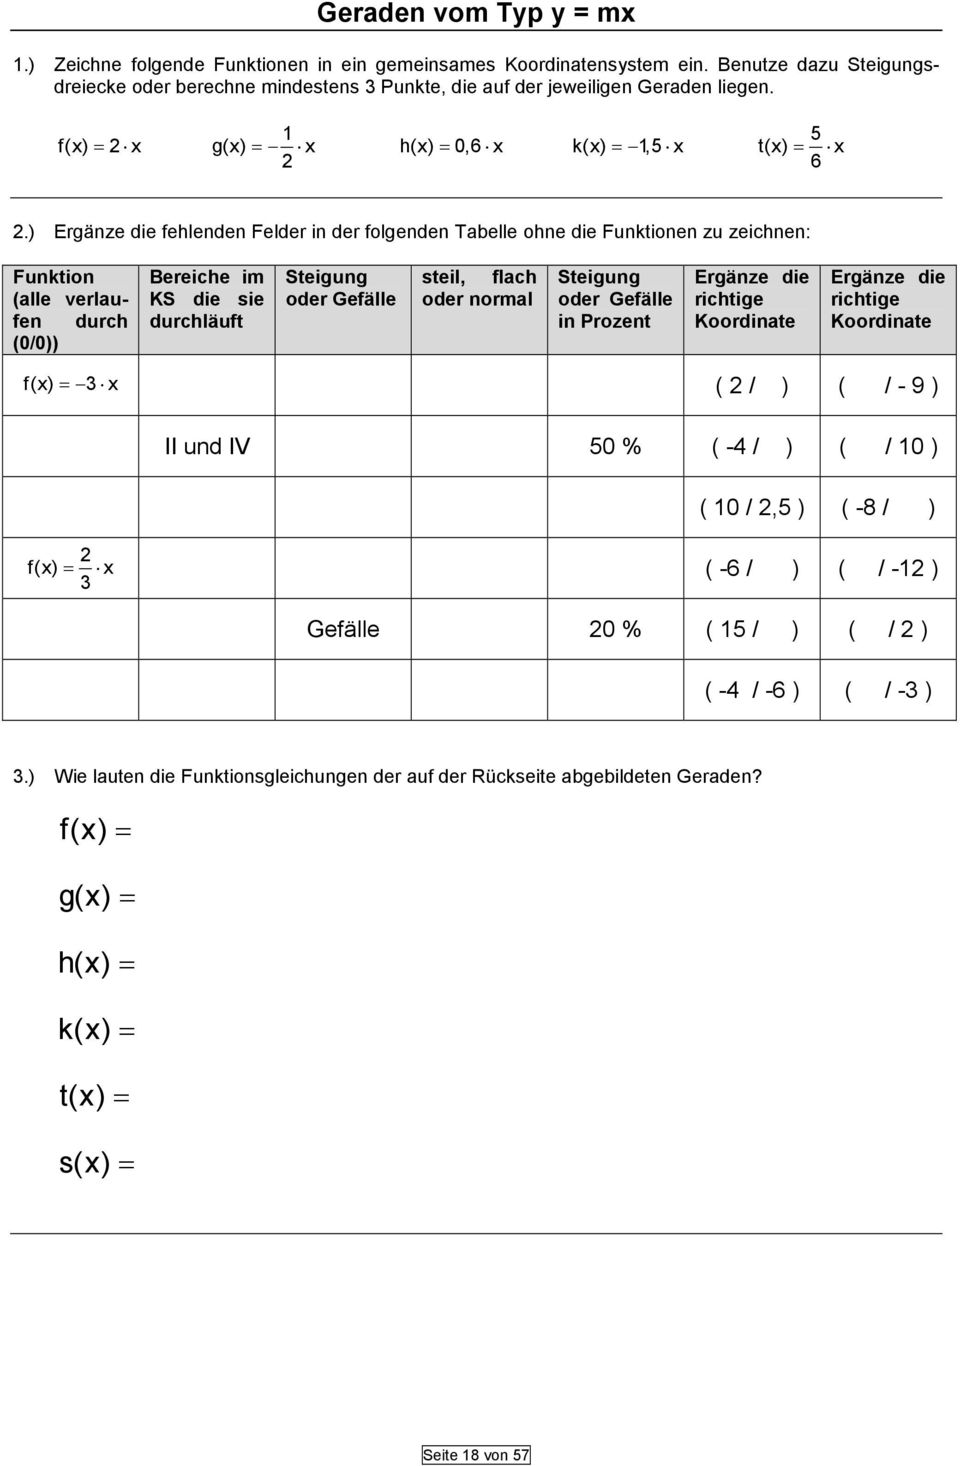 ) Ergänze die fehlenden Felder in der folgenden Tabelle ohne die Funktionen zu zeichnen: Funktion (alle verlaufen durch (0/0)) Bereiche im KS die sie durchläuft Steigung oder Gefälle steil, flach